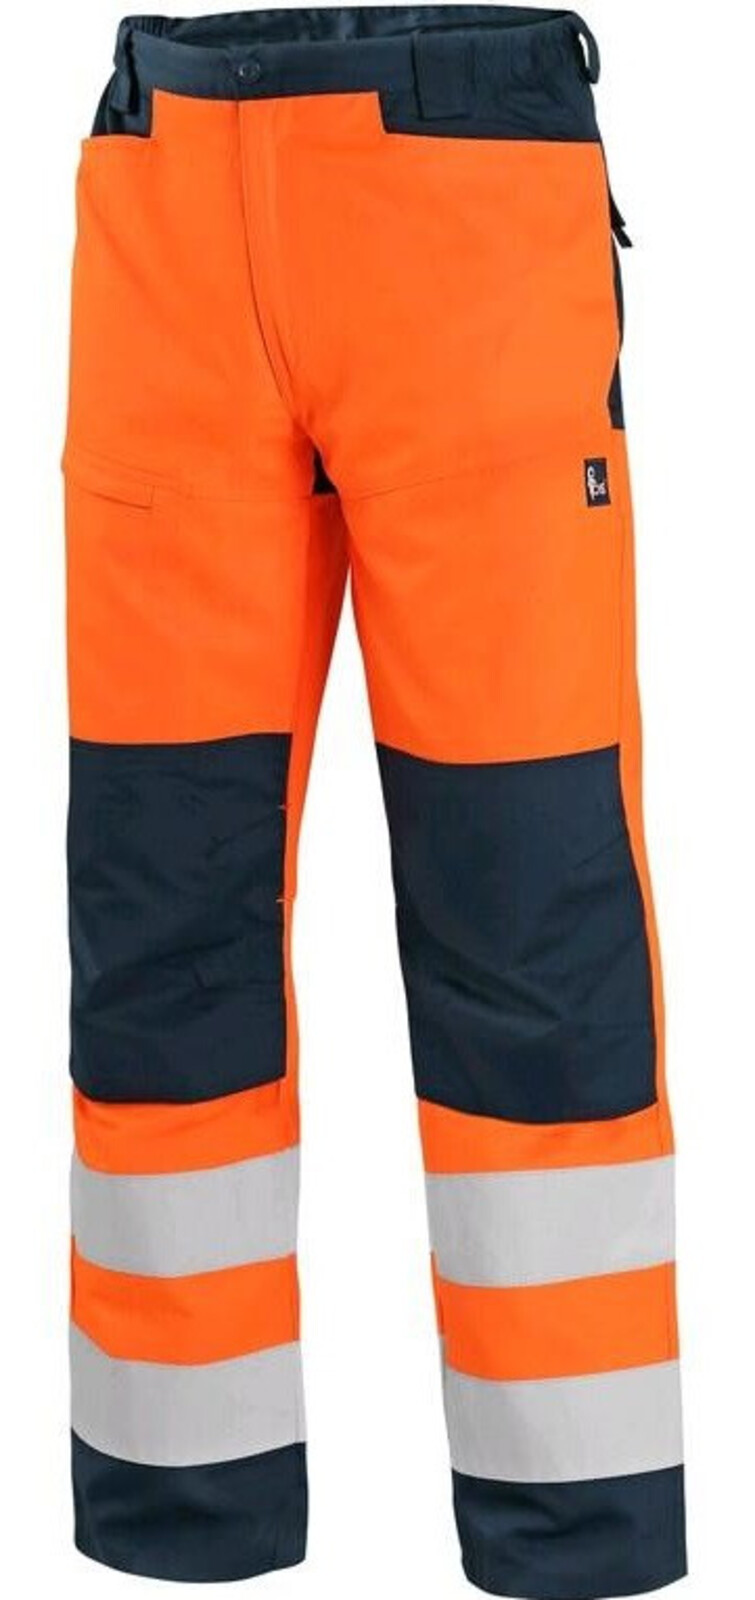 Pánske letné reflexné nohavice CXS Halifax - veľkosť: 58, farba: oranžová/navy